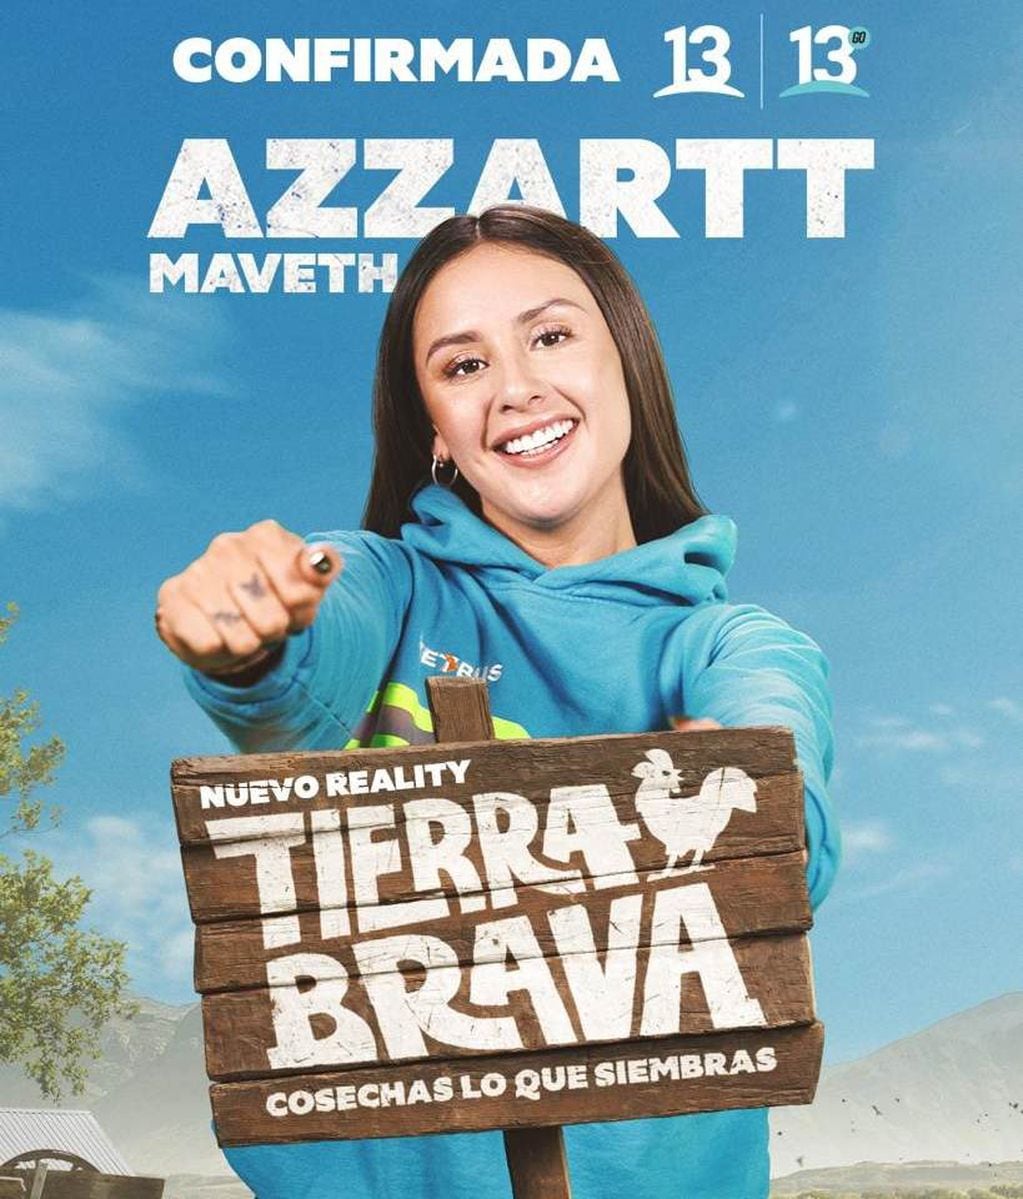 Azzartt Maveth Arias se convirtió en la sexta confirmada del reality Tierra Brava.